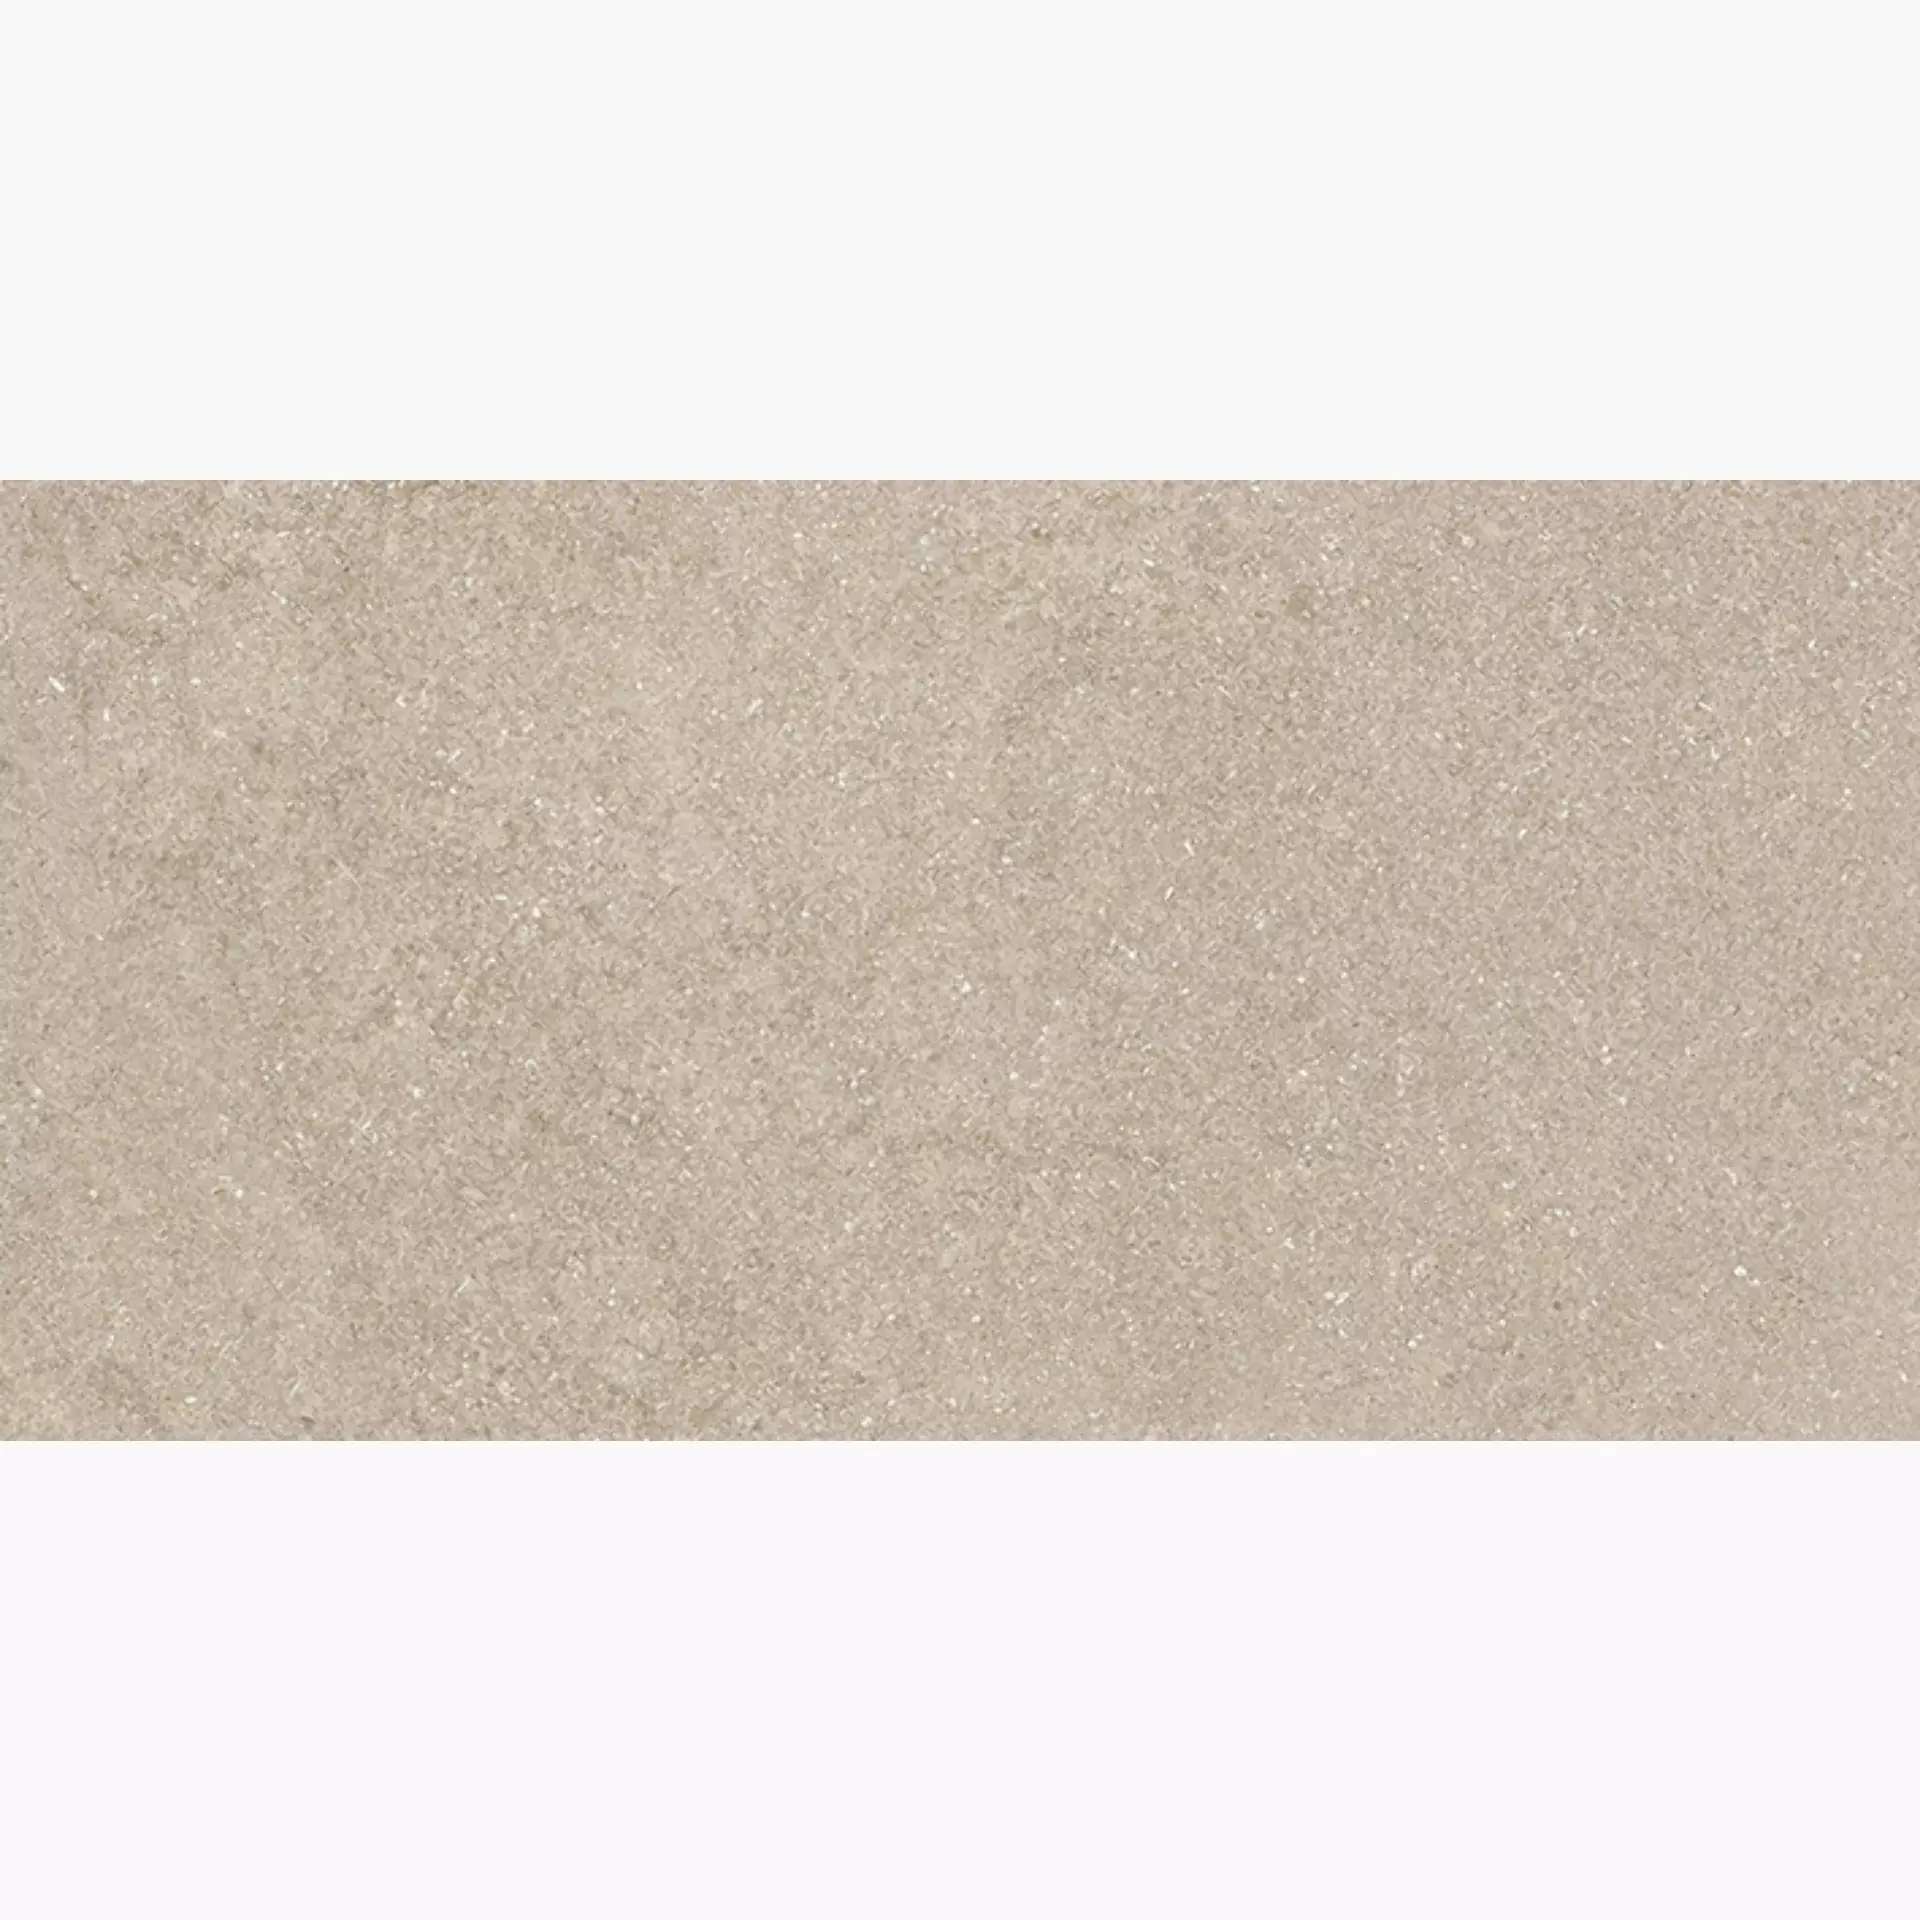 Wandfliese,Bodenfliese Villeroy & Boch Lucca Sand Matt Sand 2870-LS70 matt 30x60cm rektifiziert 9mm